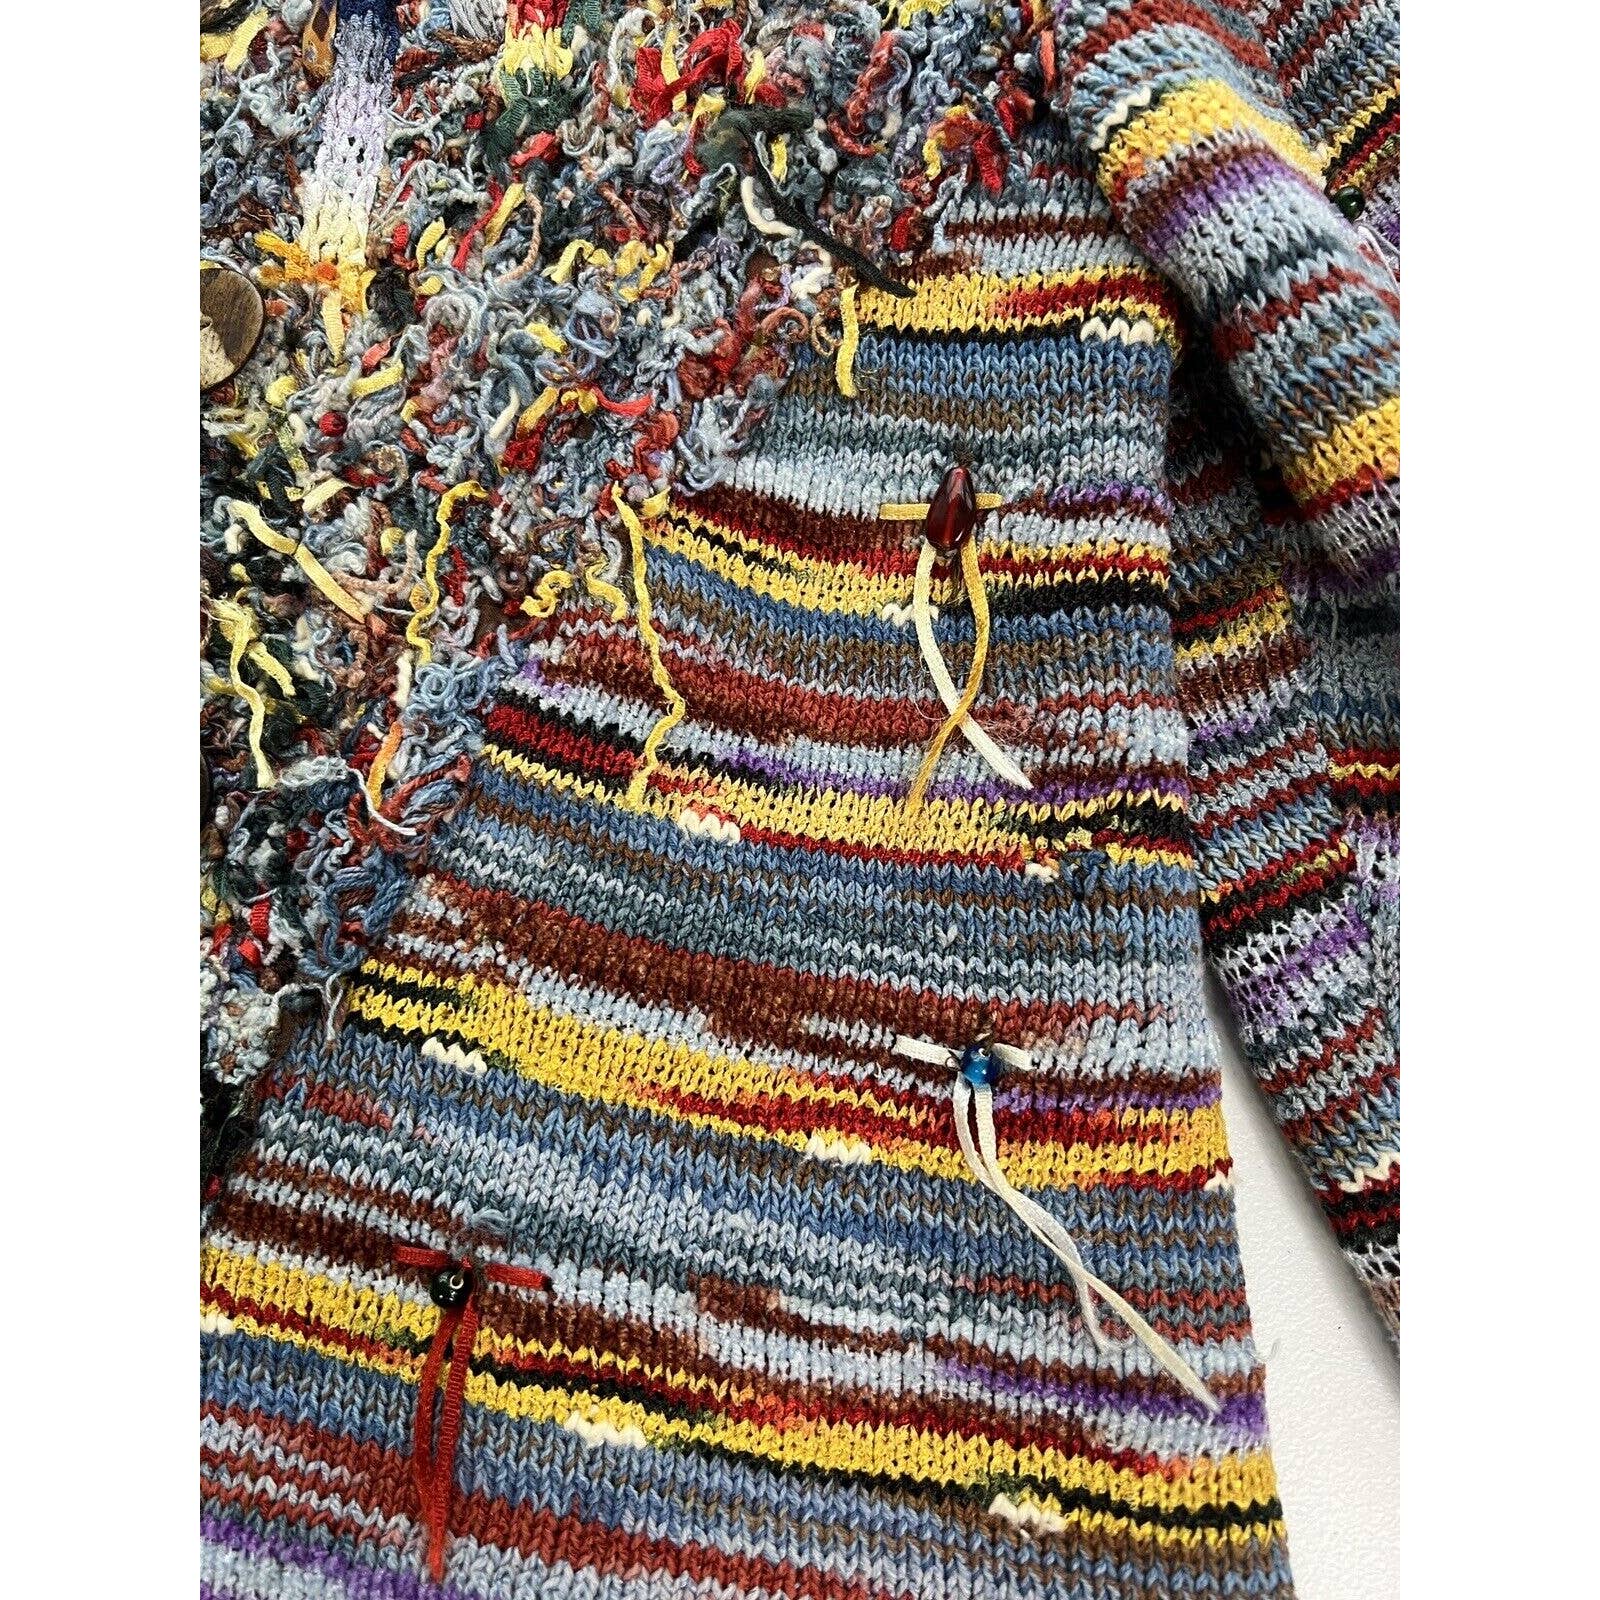 Sandy Starkman Sweater Jacket Women’s XS Art To Wear Boho Fringes Wood Buttons